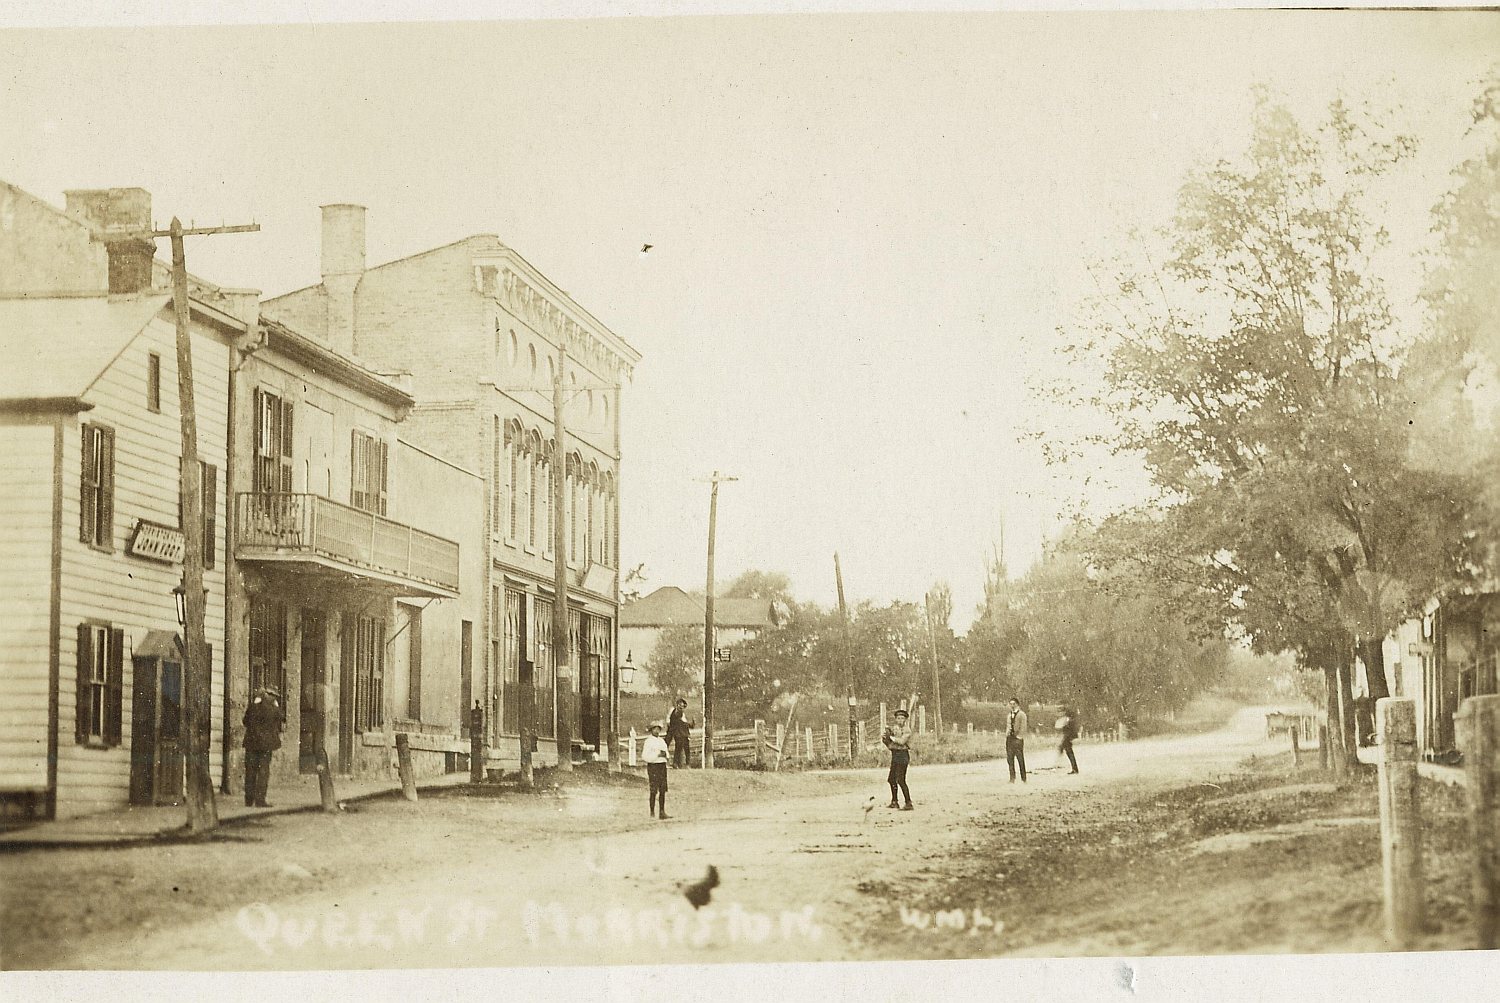 Queen street in Morriston circa 1900